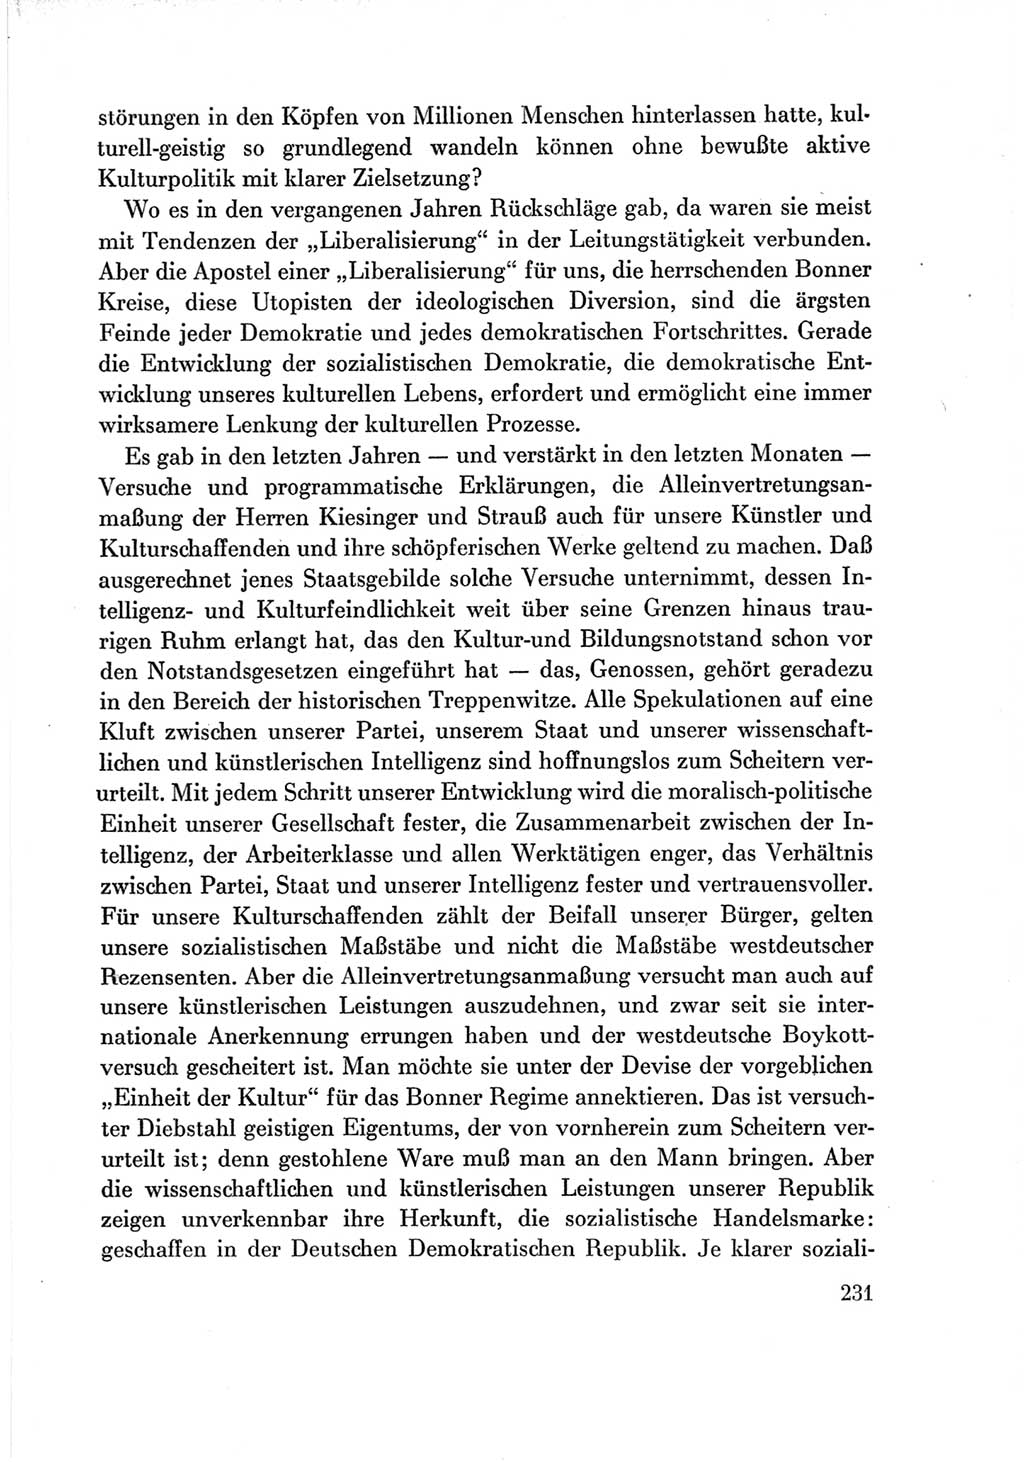 Protokoll der Verhandlungen des Ⅶ. Parteitages der Sozialistischen Einheitspartei Deutschlands (SED) [Deutsche Demokratische Republik (DDR)] 1967, Band Ⅲ, Seite 231 (Prot. Verh. Ⅶ. PT SED DDR 1967, Bd. Ⅲ, S. 231)